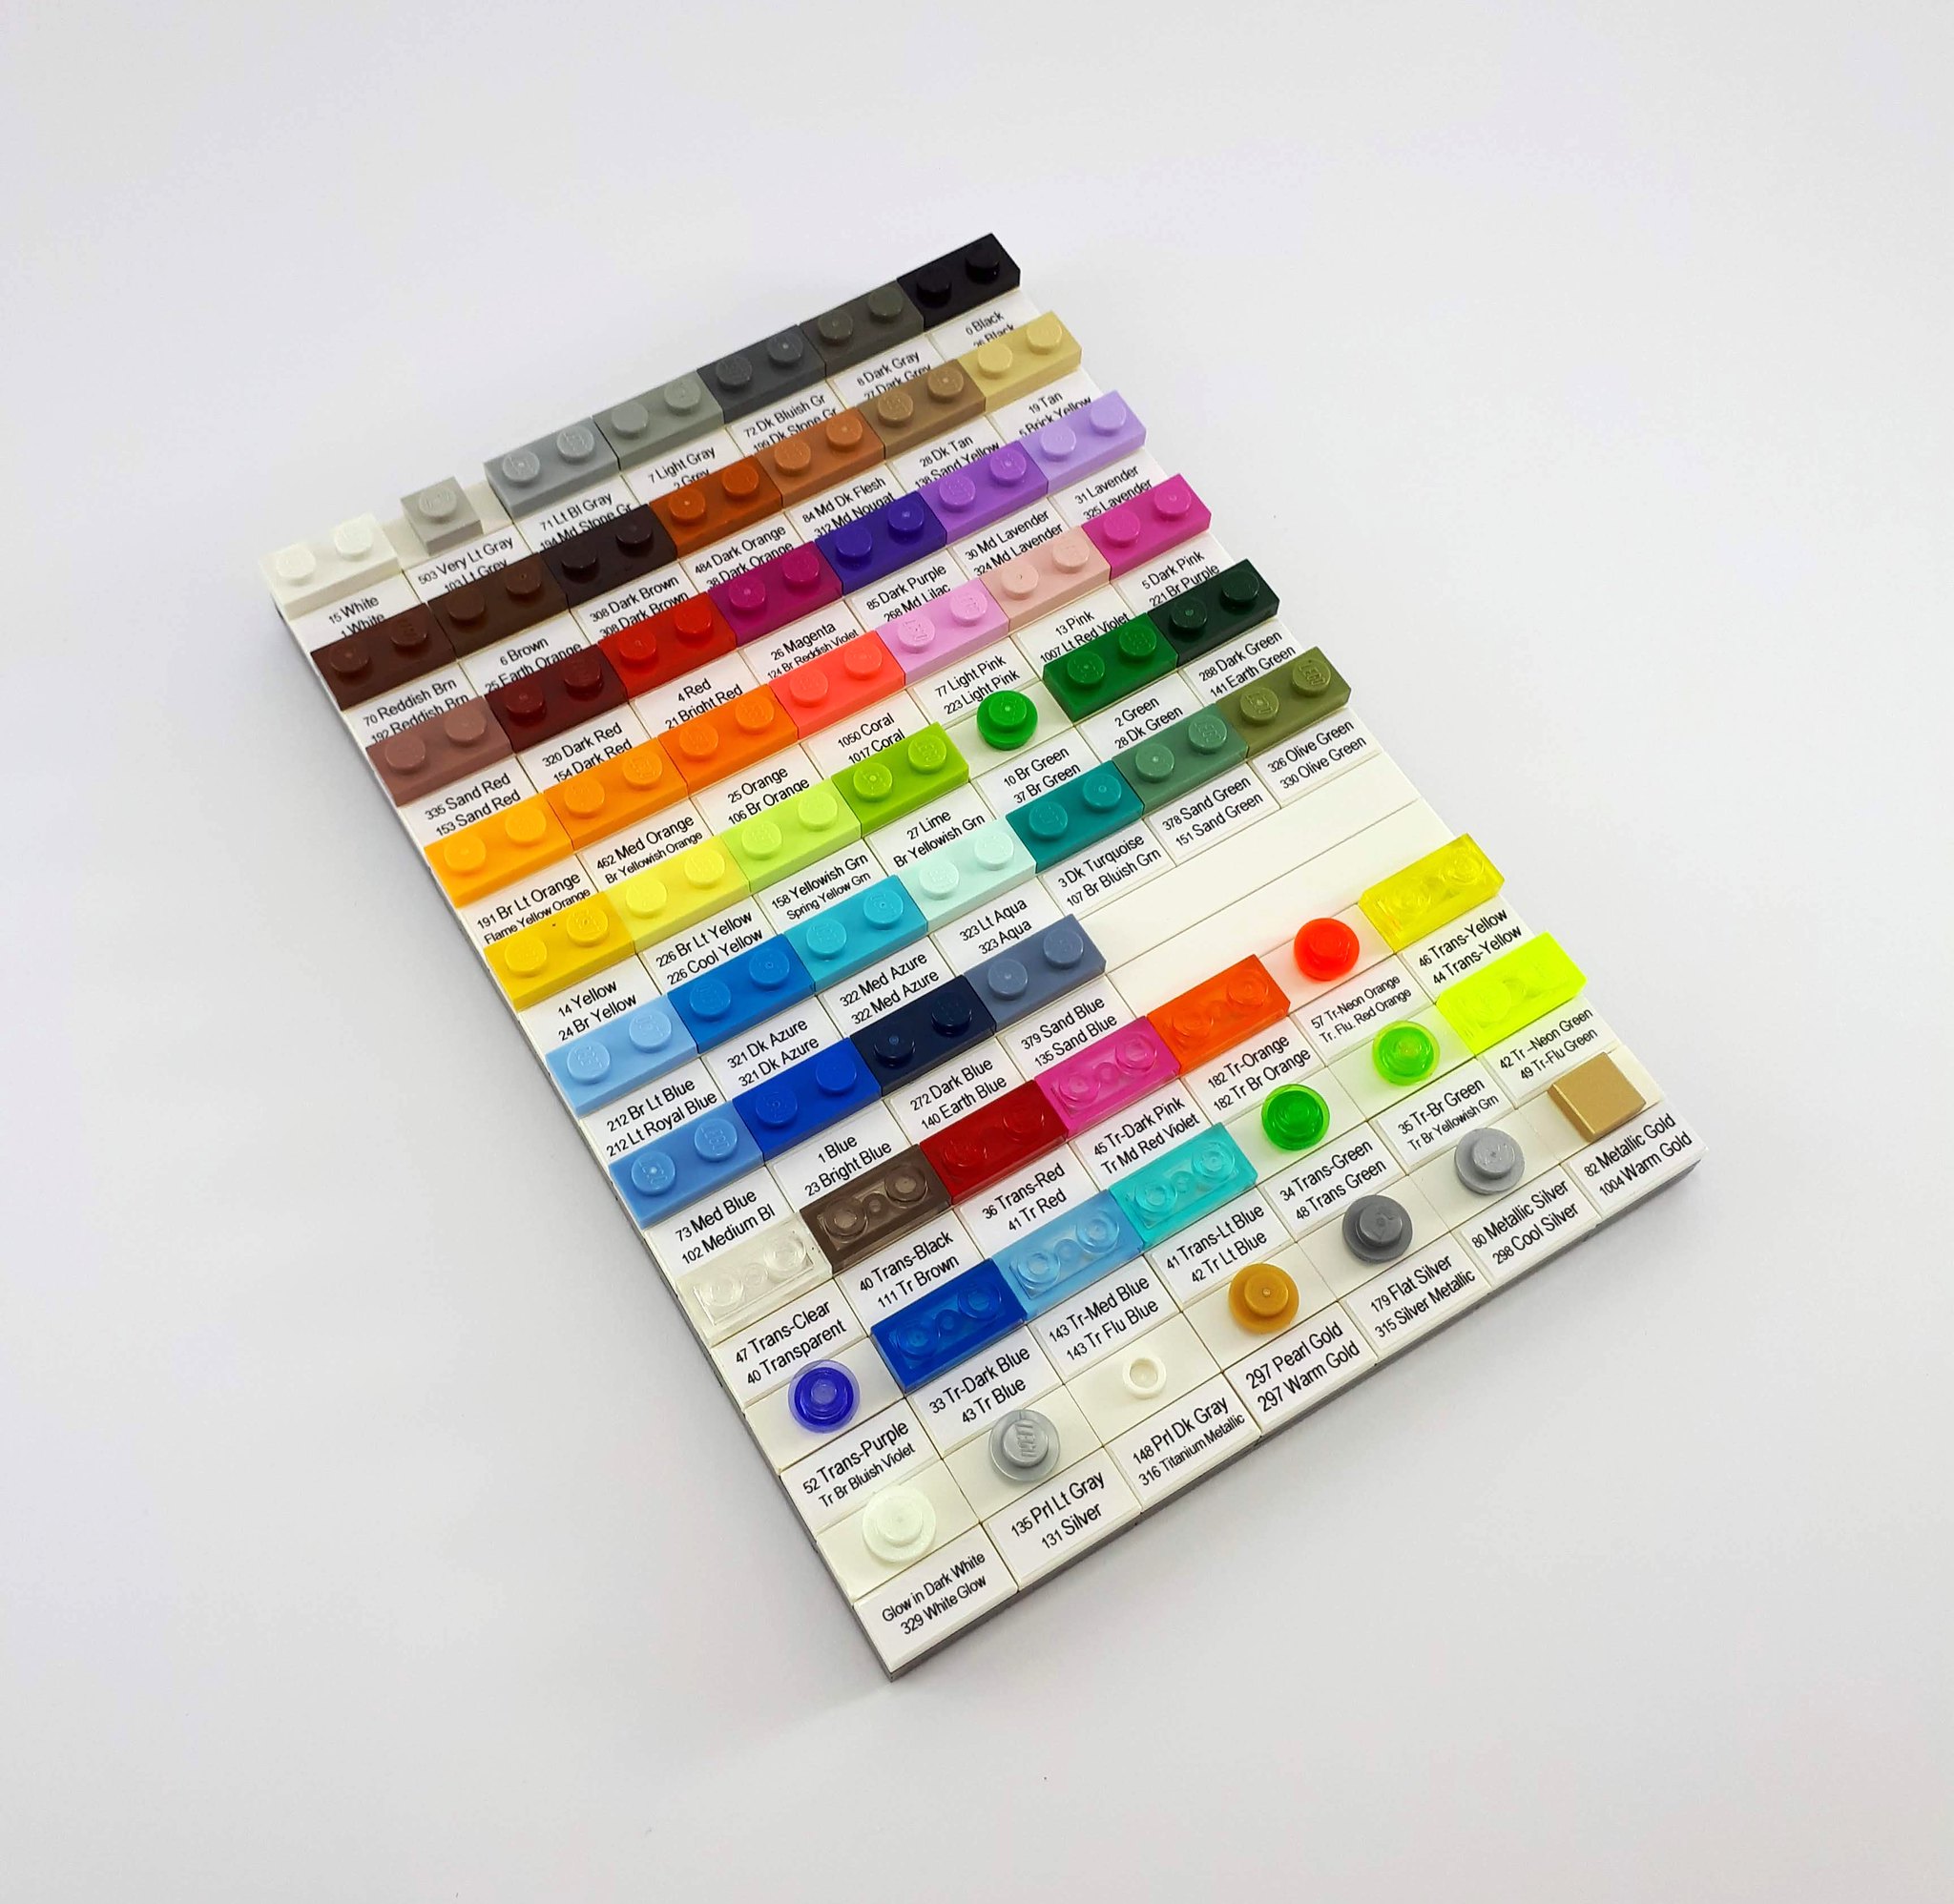 Inventario dei colori LEGO by CJ Hendrix